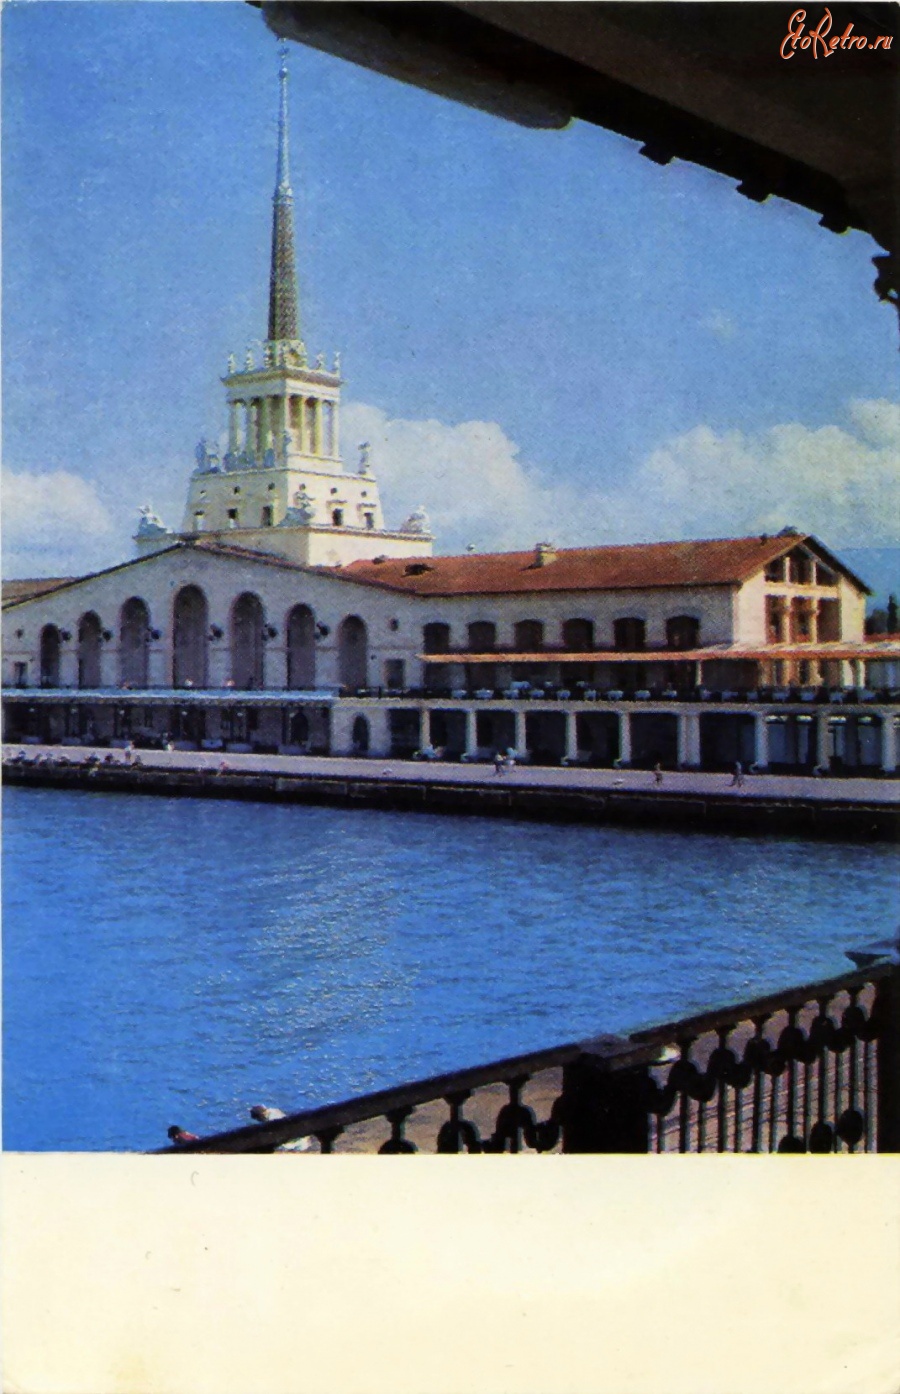 Сочи - Морской вокзал